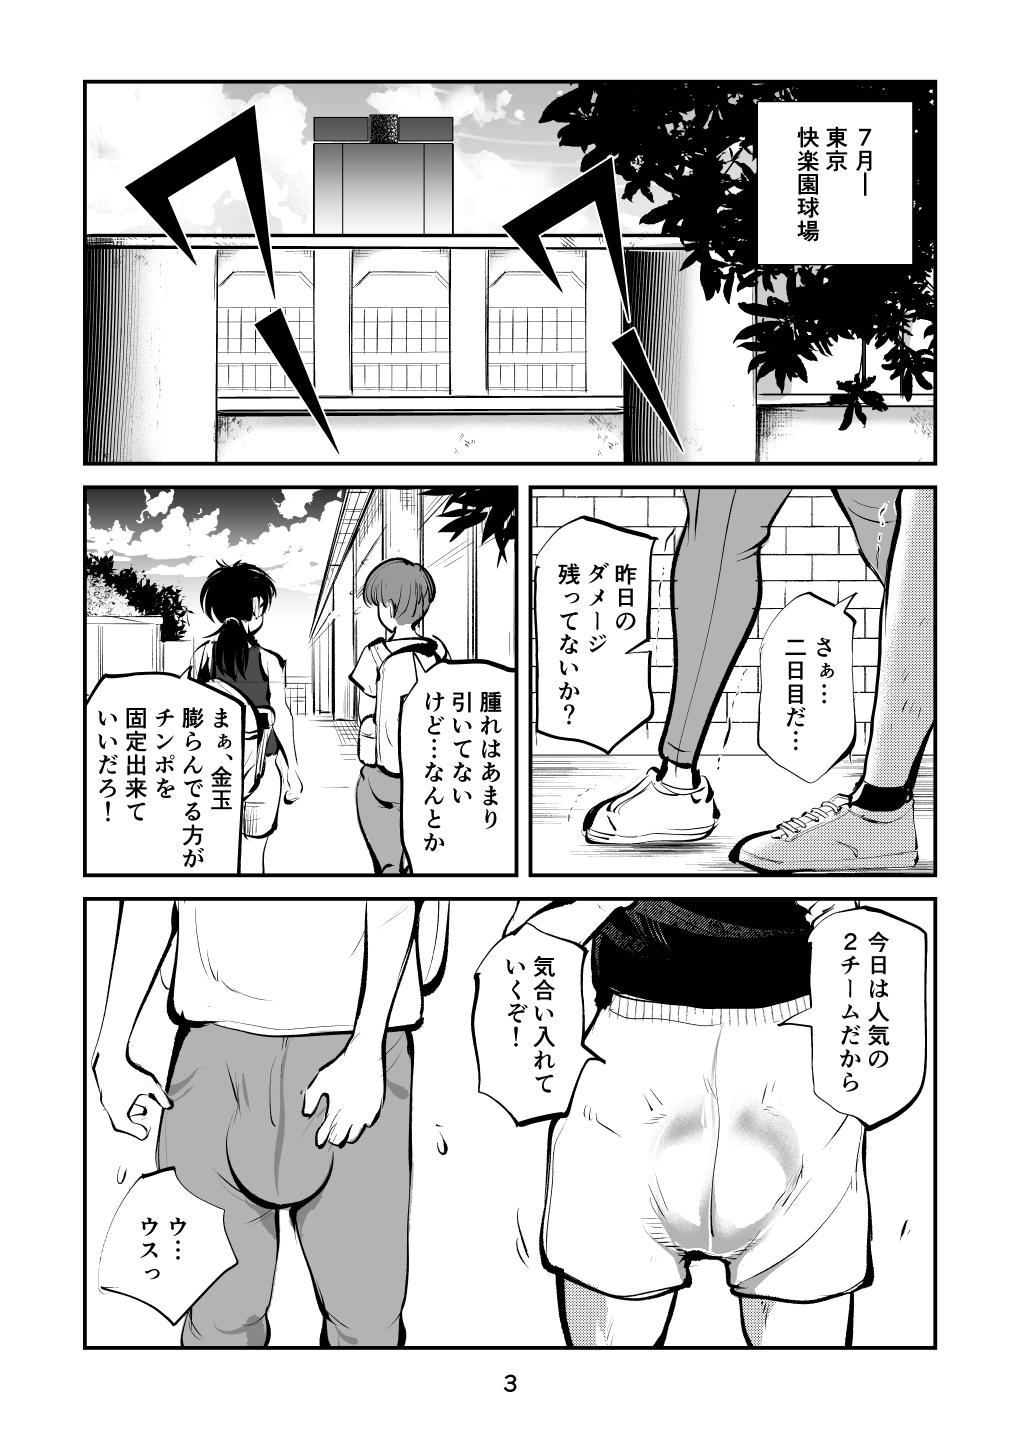 Sucking Cock Kinkeri Cheer Girl VS Tosatsuma Shakai Hito Cheer Girl-hen - Original Swingers - Page 3